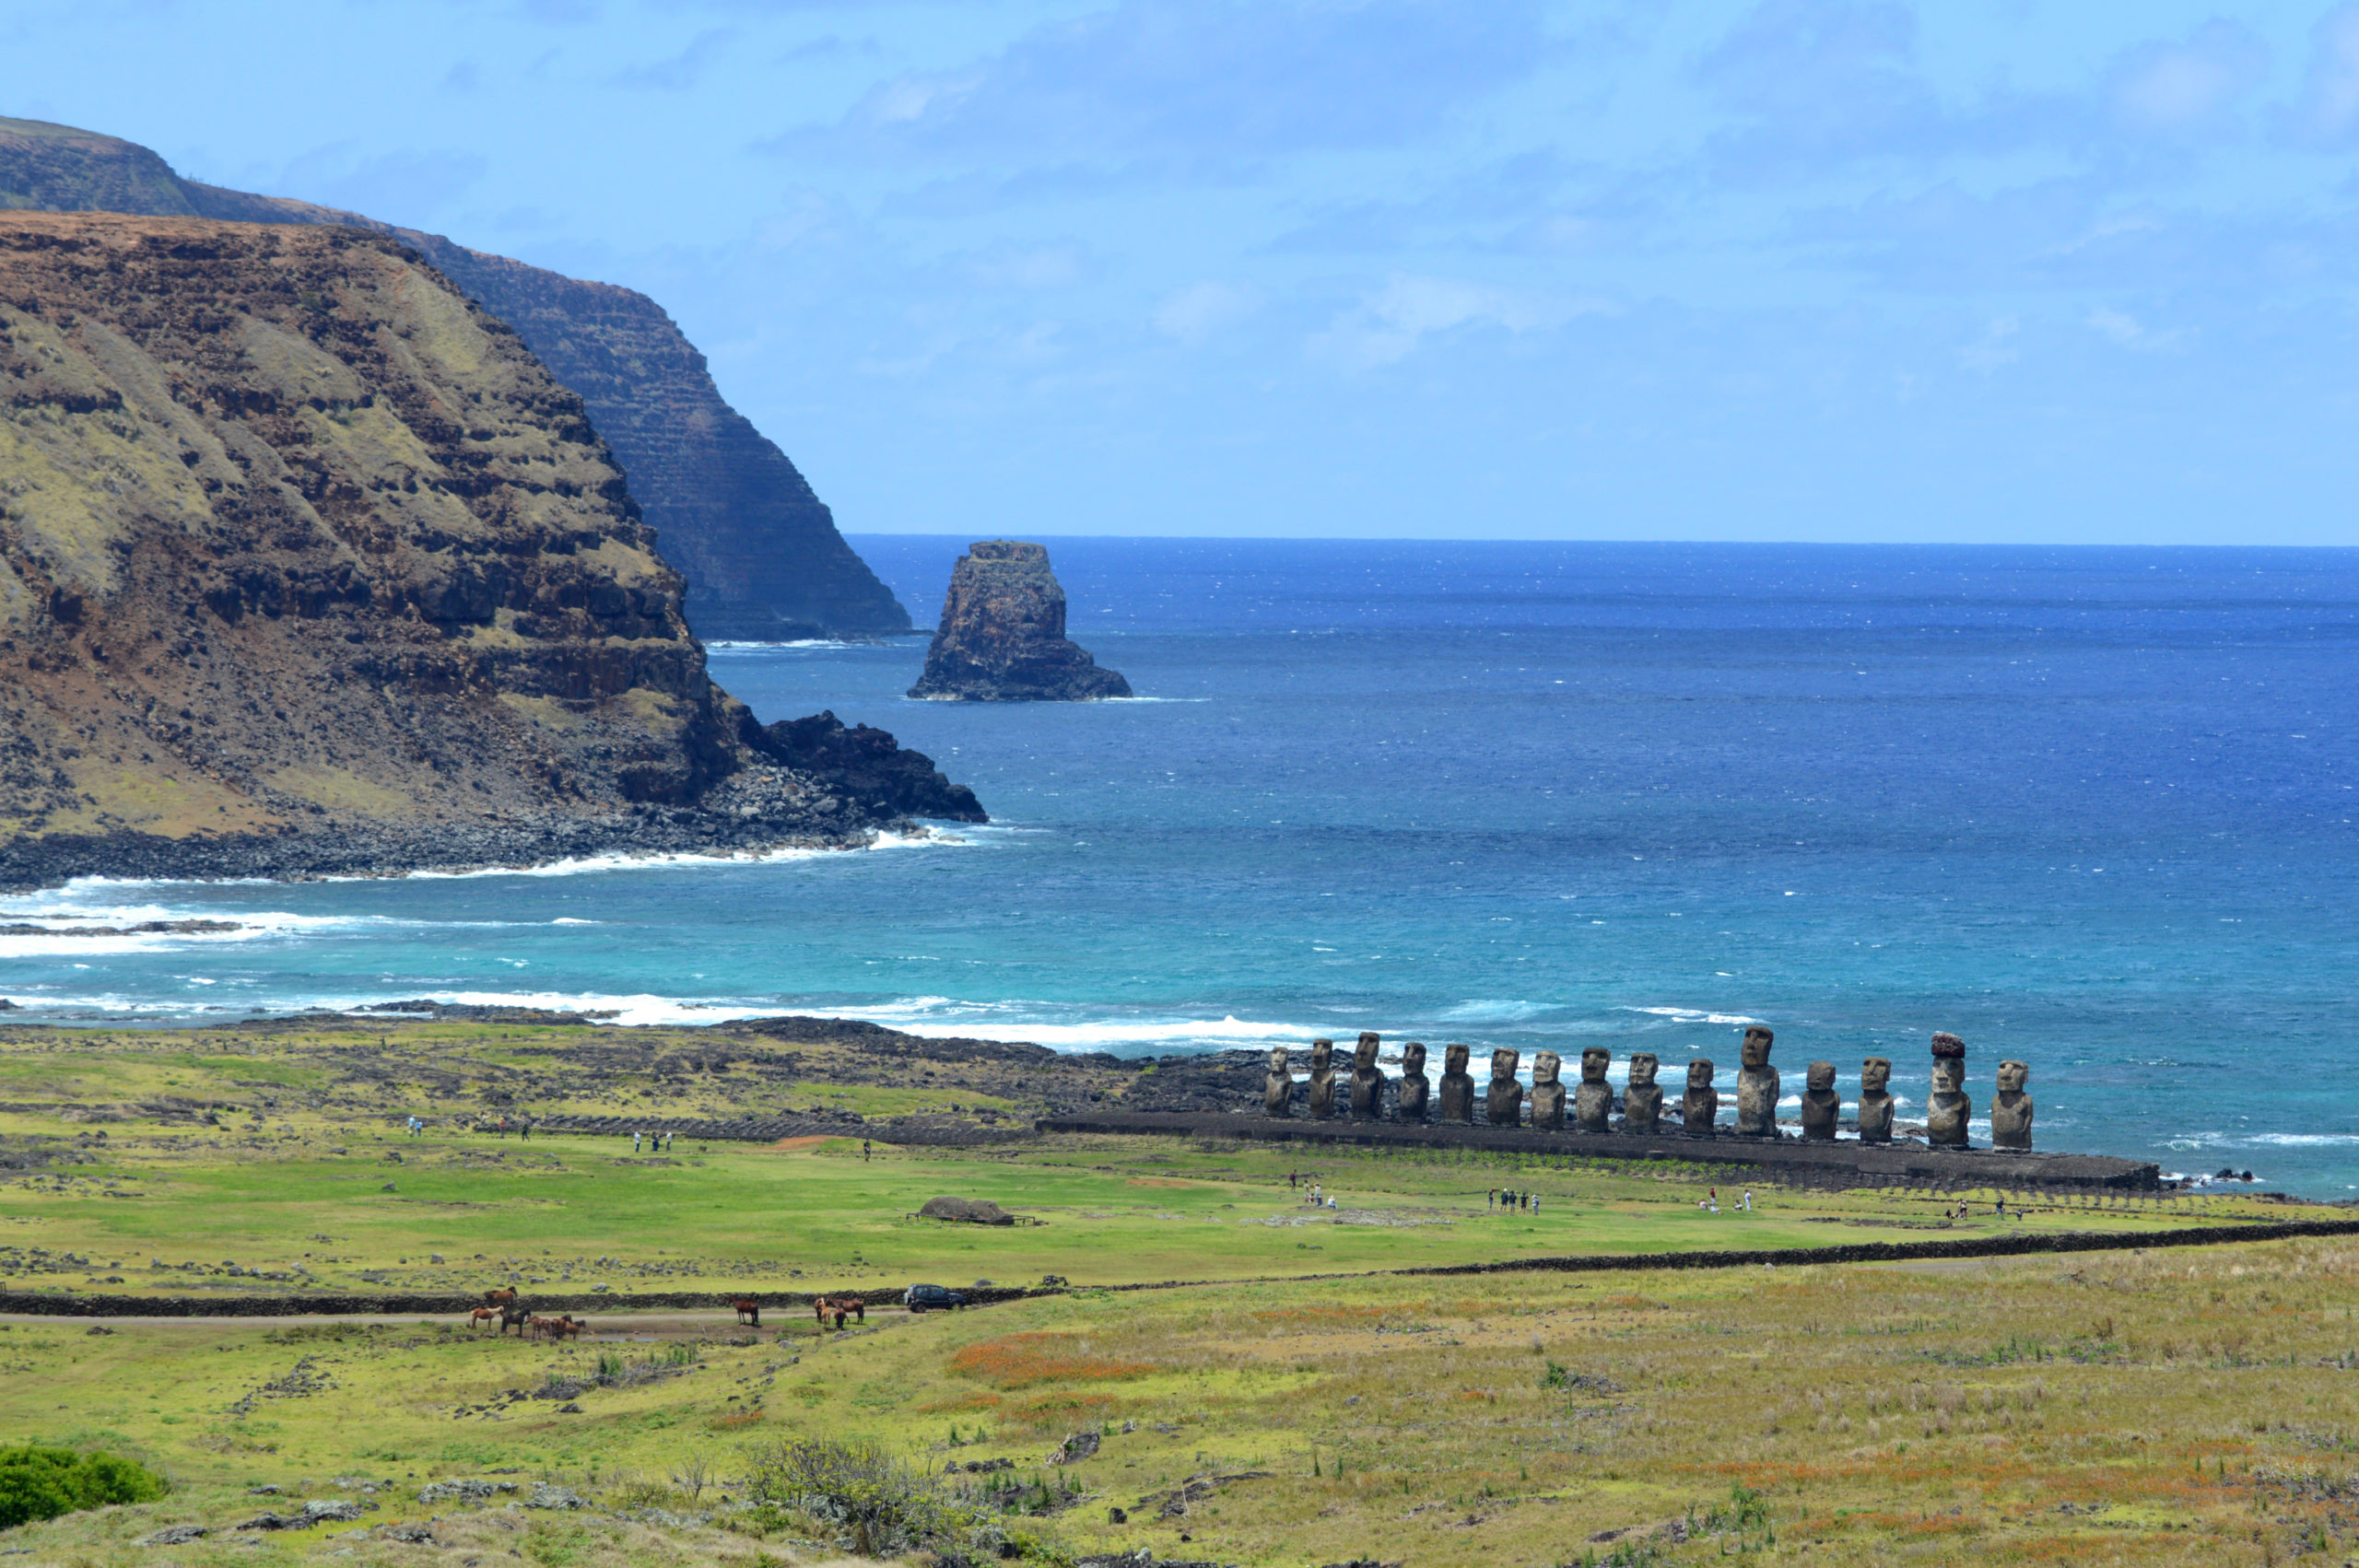 Vue sur les immenses falaises noires au loin, et en contre bas, sur les statues de Tongariki, alignées, dos à l'océan